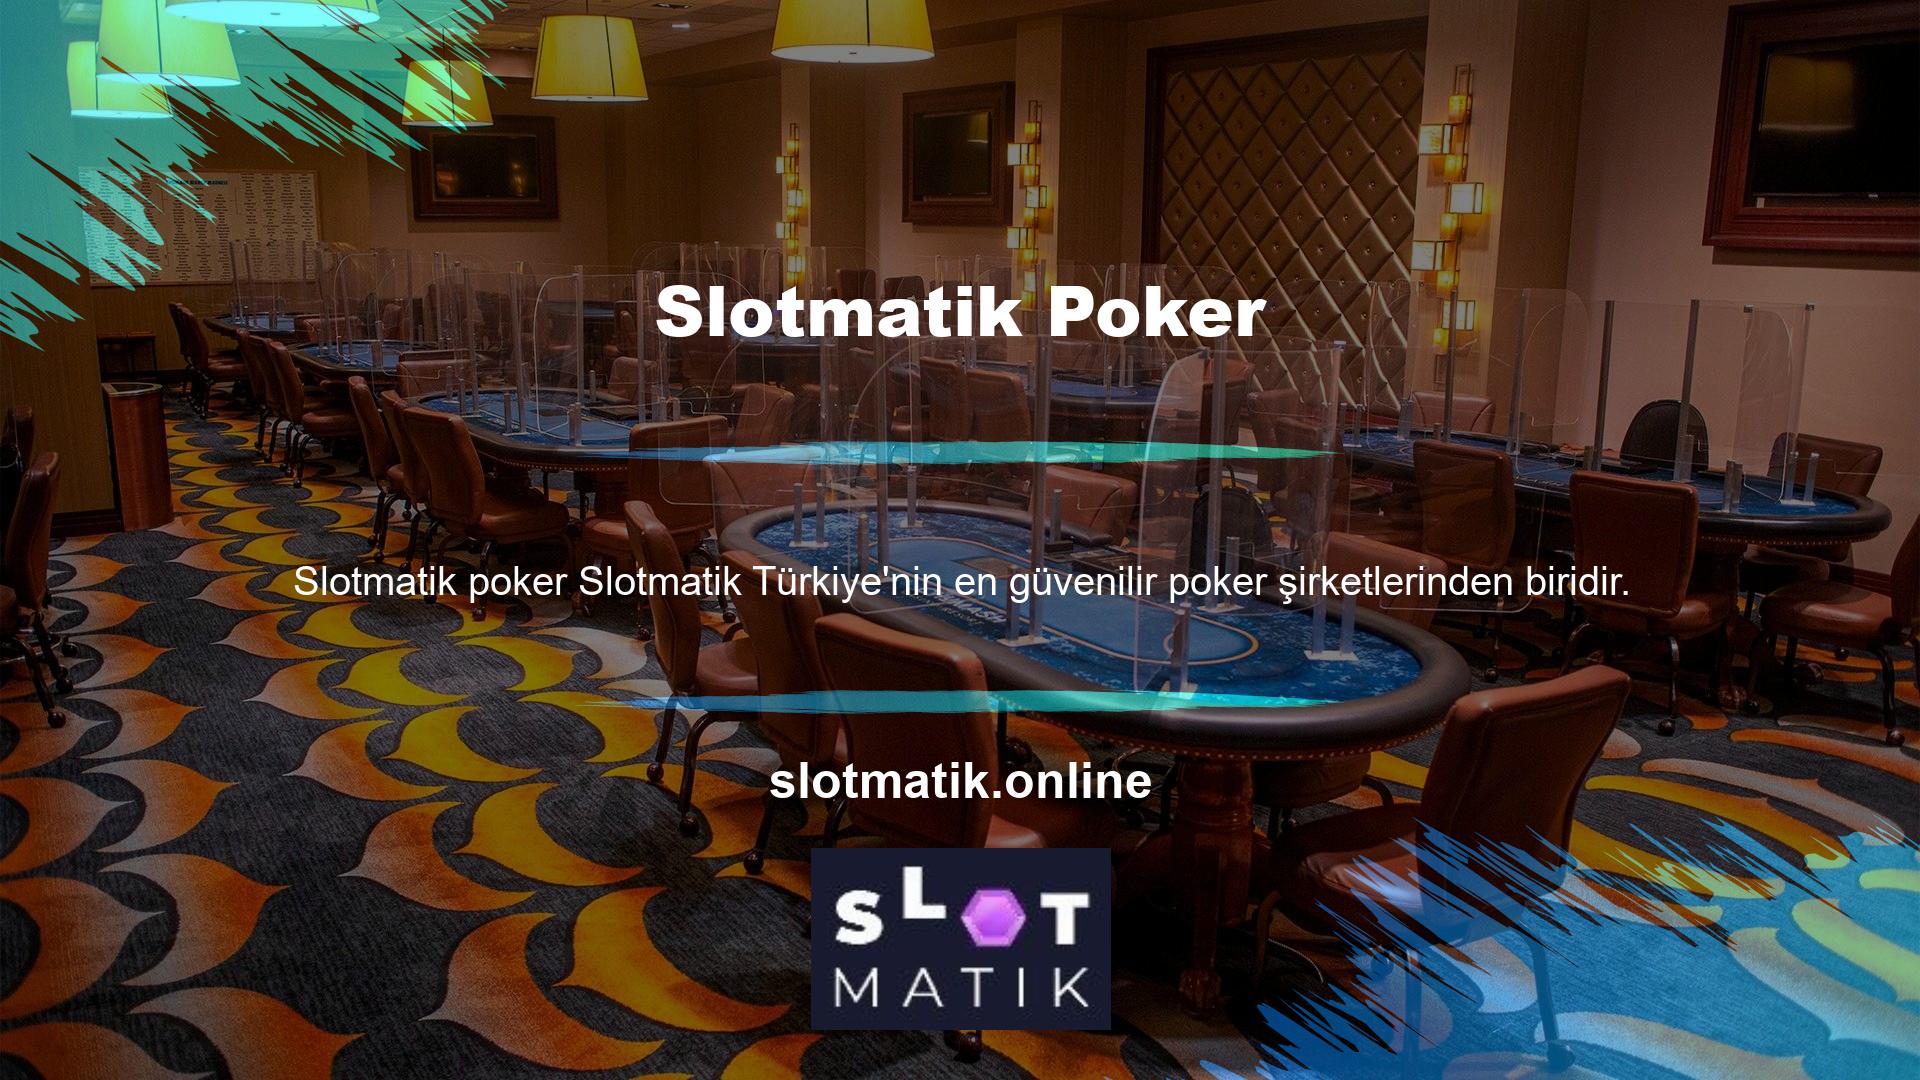 Slotmatik blackjack oyununa ilgi duyan tüm taraflar tarafından ülkemizde en çok aranan ve popüler rulet sitelerinden biridir